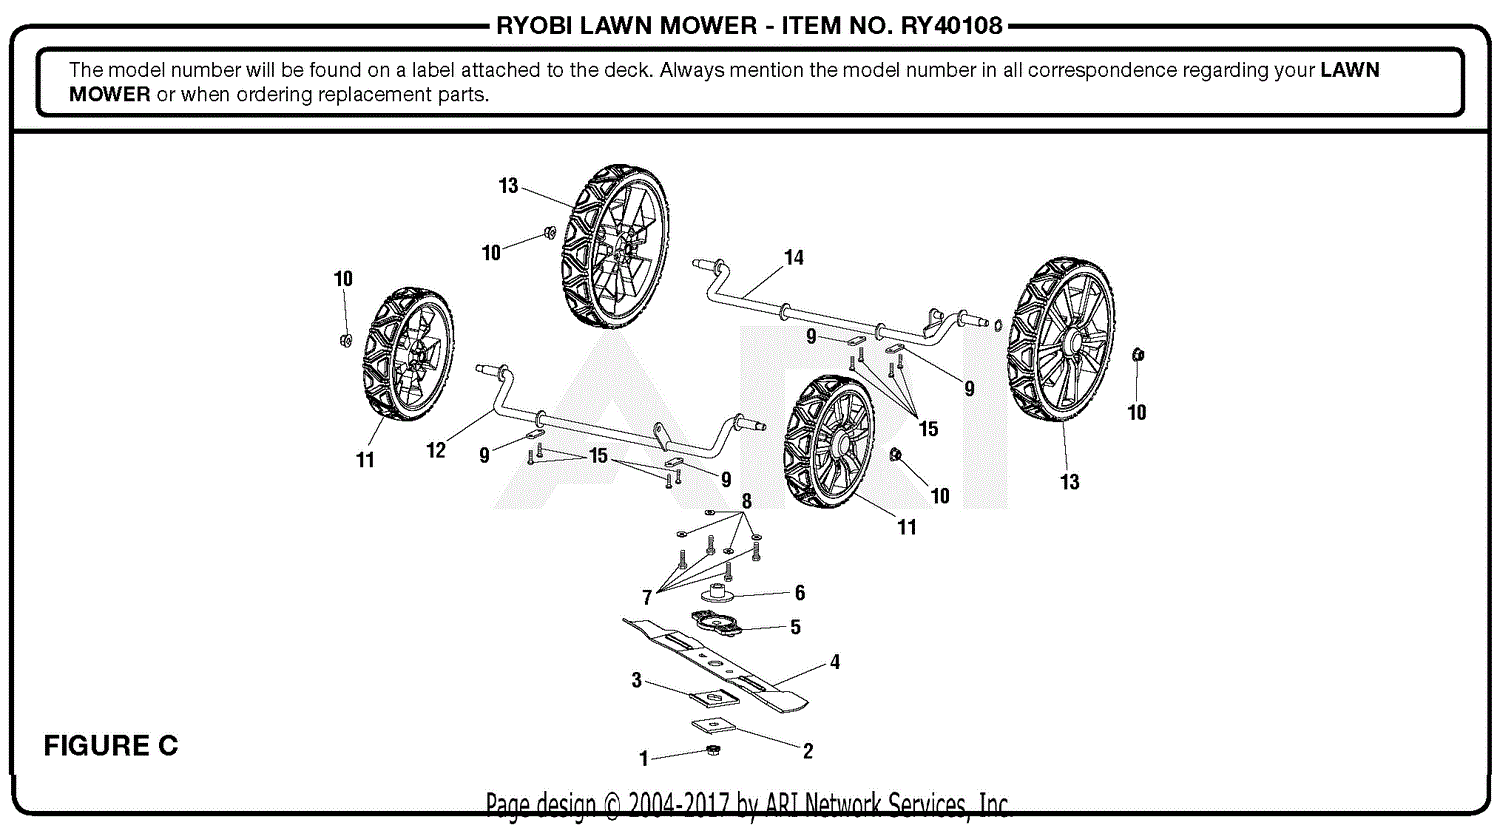 Homelite RY40108 40 Volt Lawn Mower Mfg. No. 107813001 5-21-18 (Rev:10